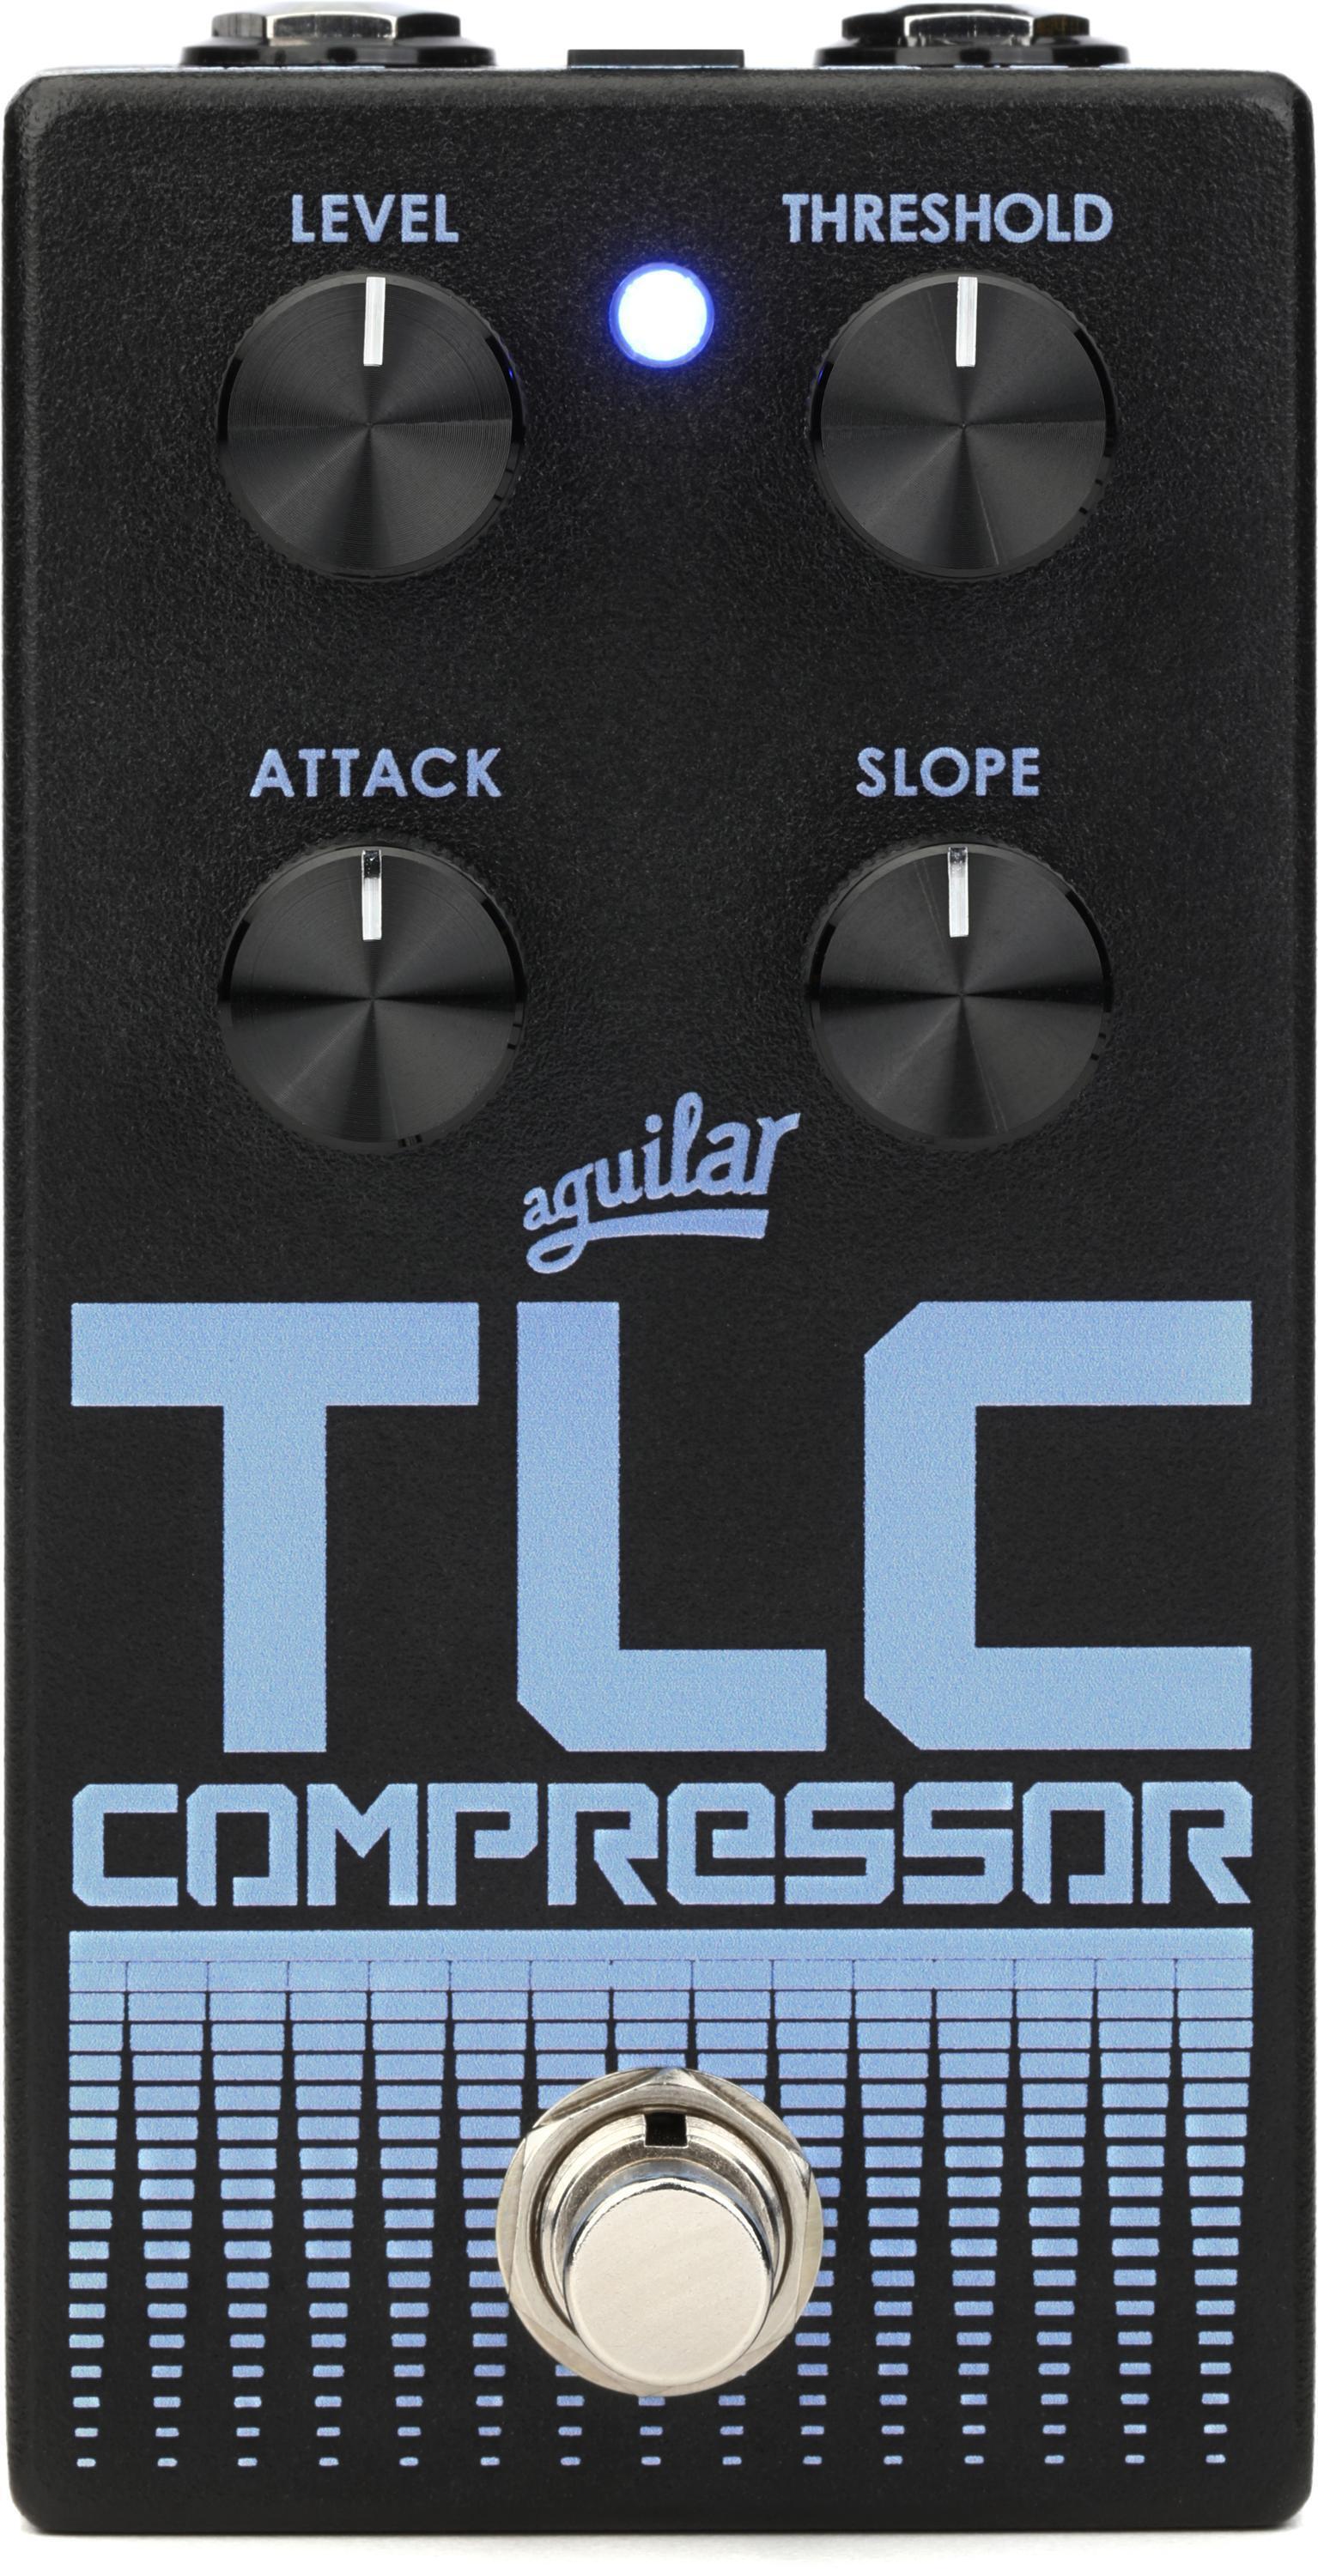 Aguilar TLC Compressor